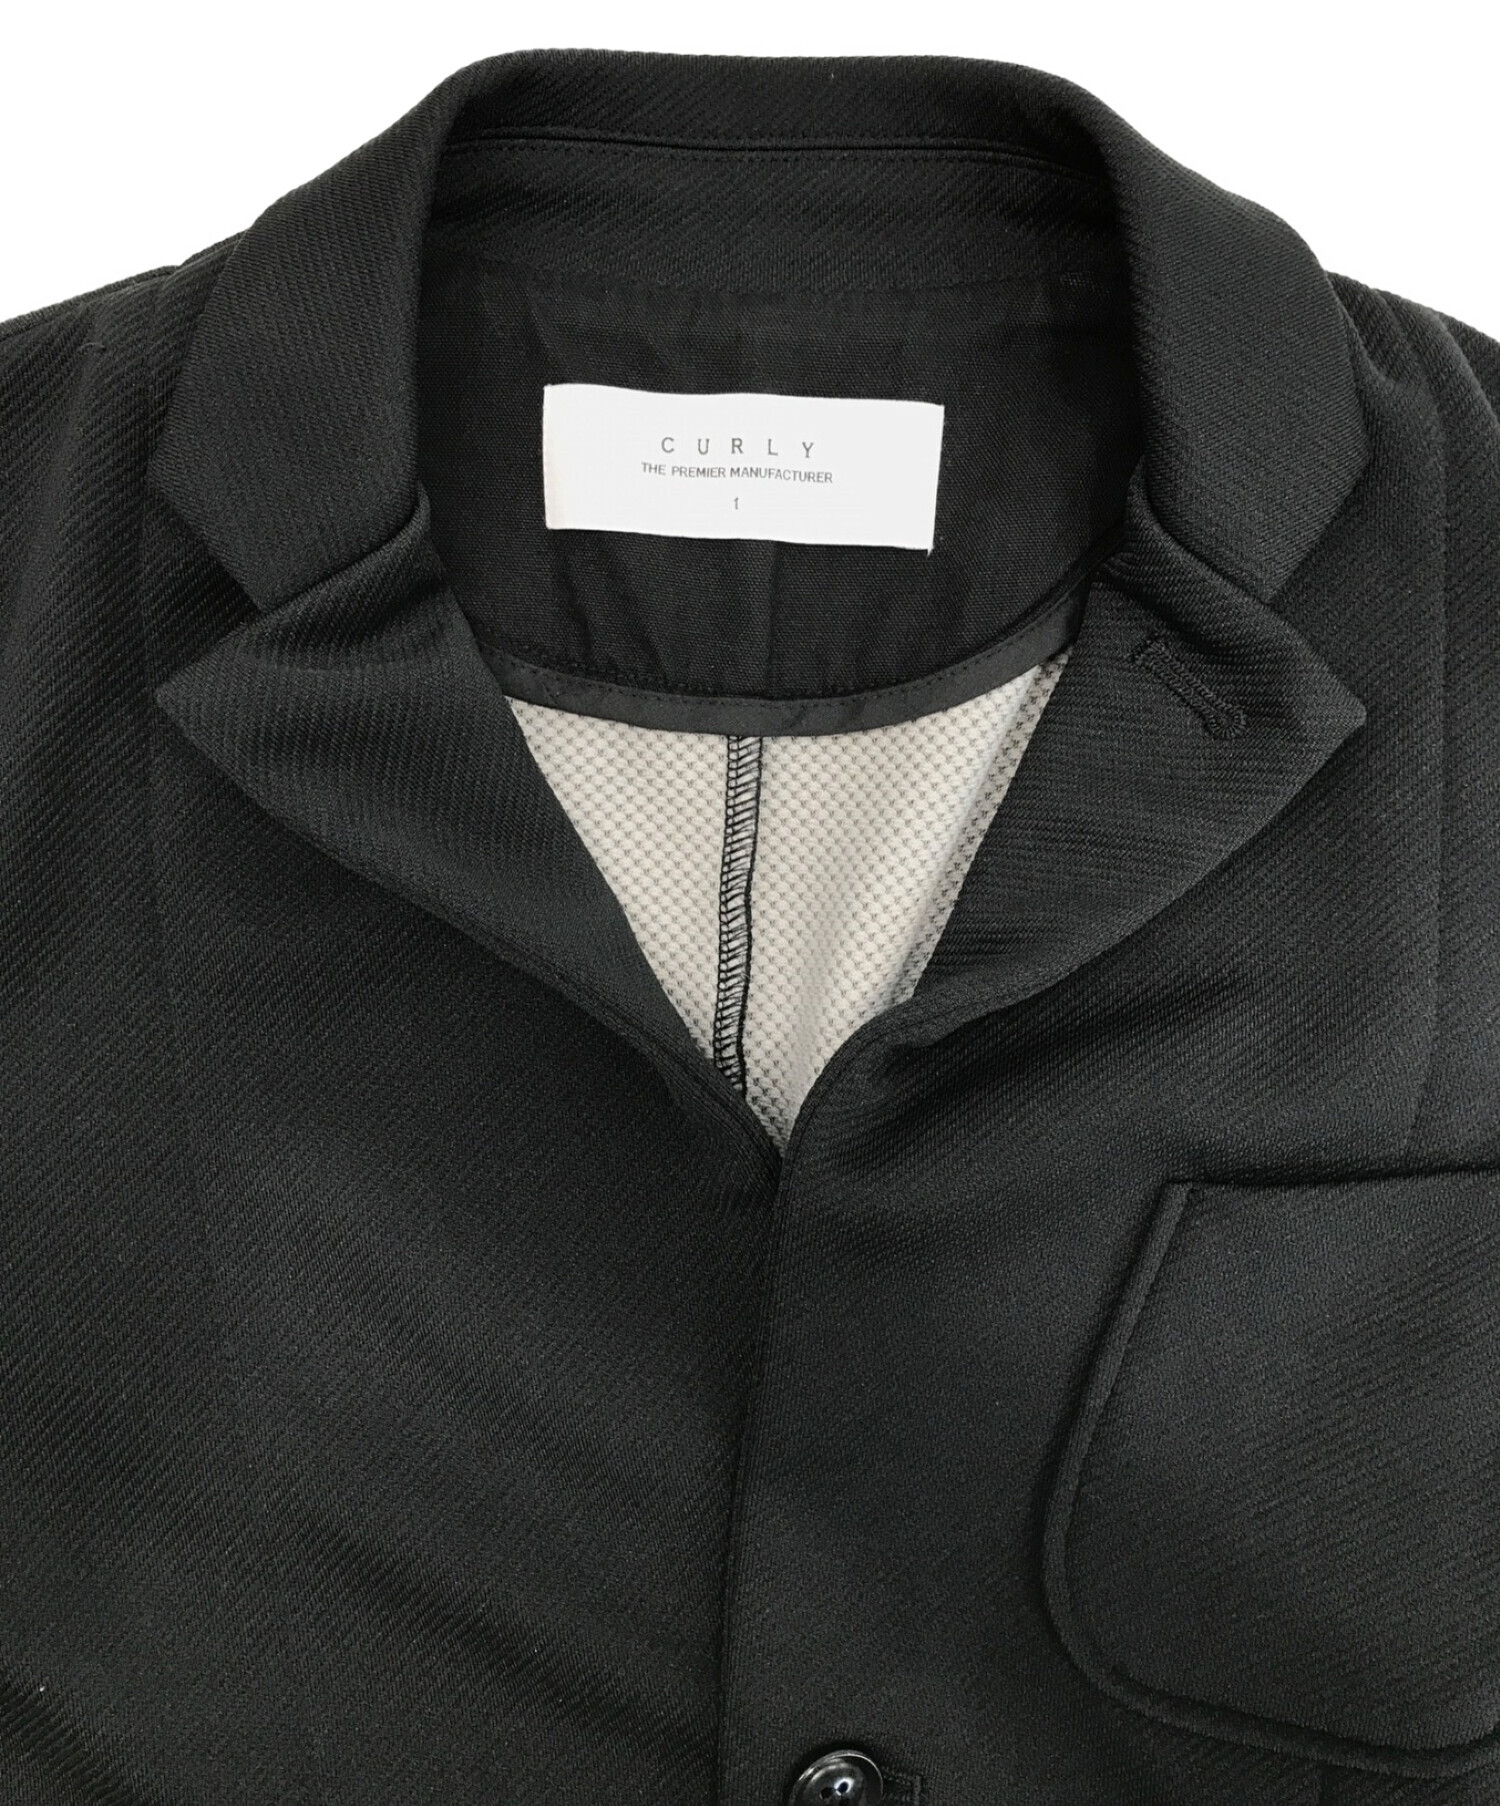 CURLY (カーリー) ジャージ素材セットアップ/ジャケット/パンツ ブラック サイズ:1